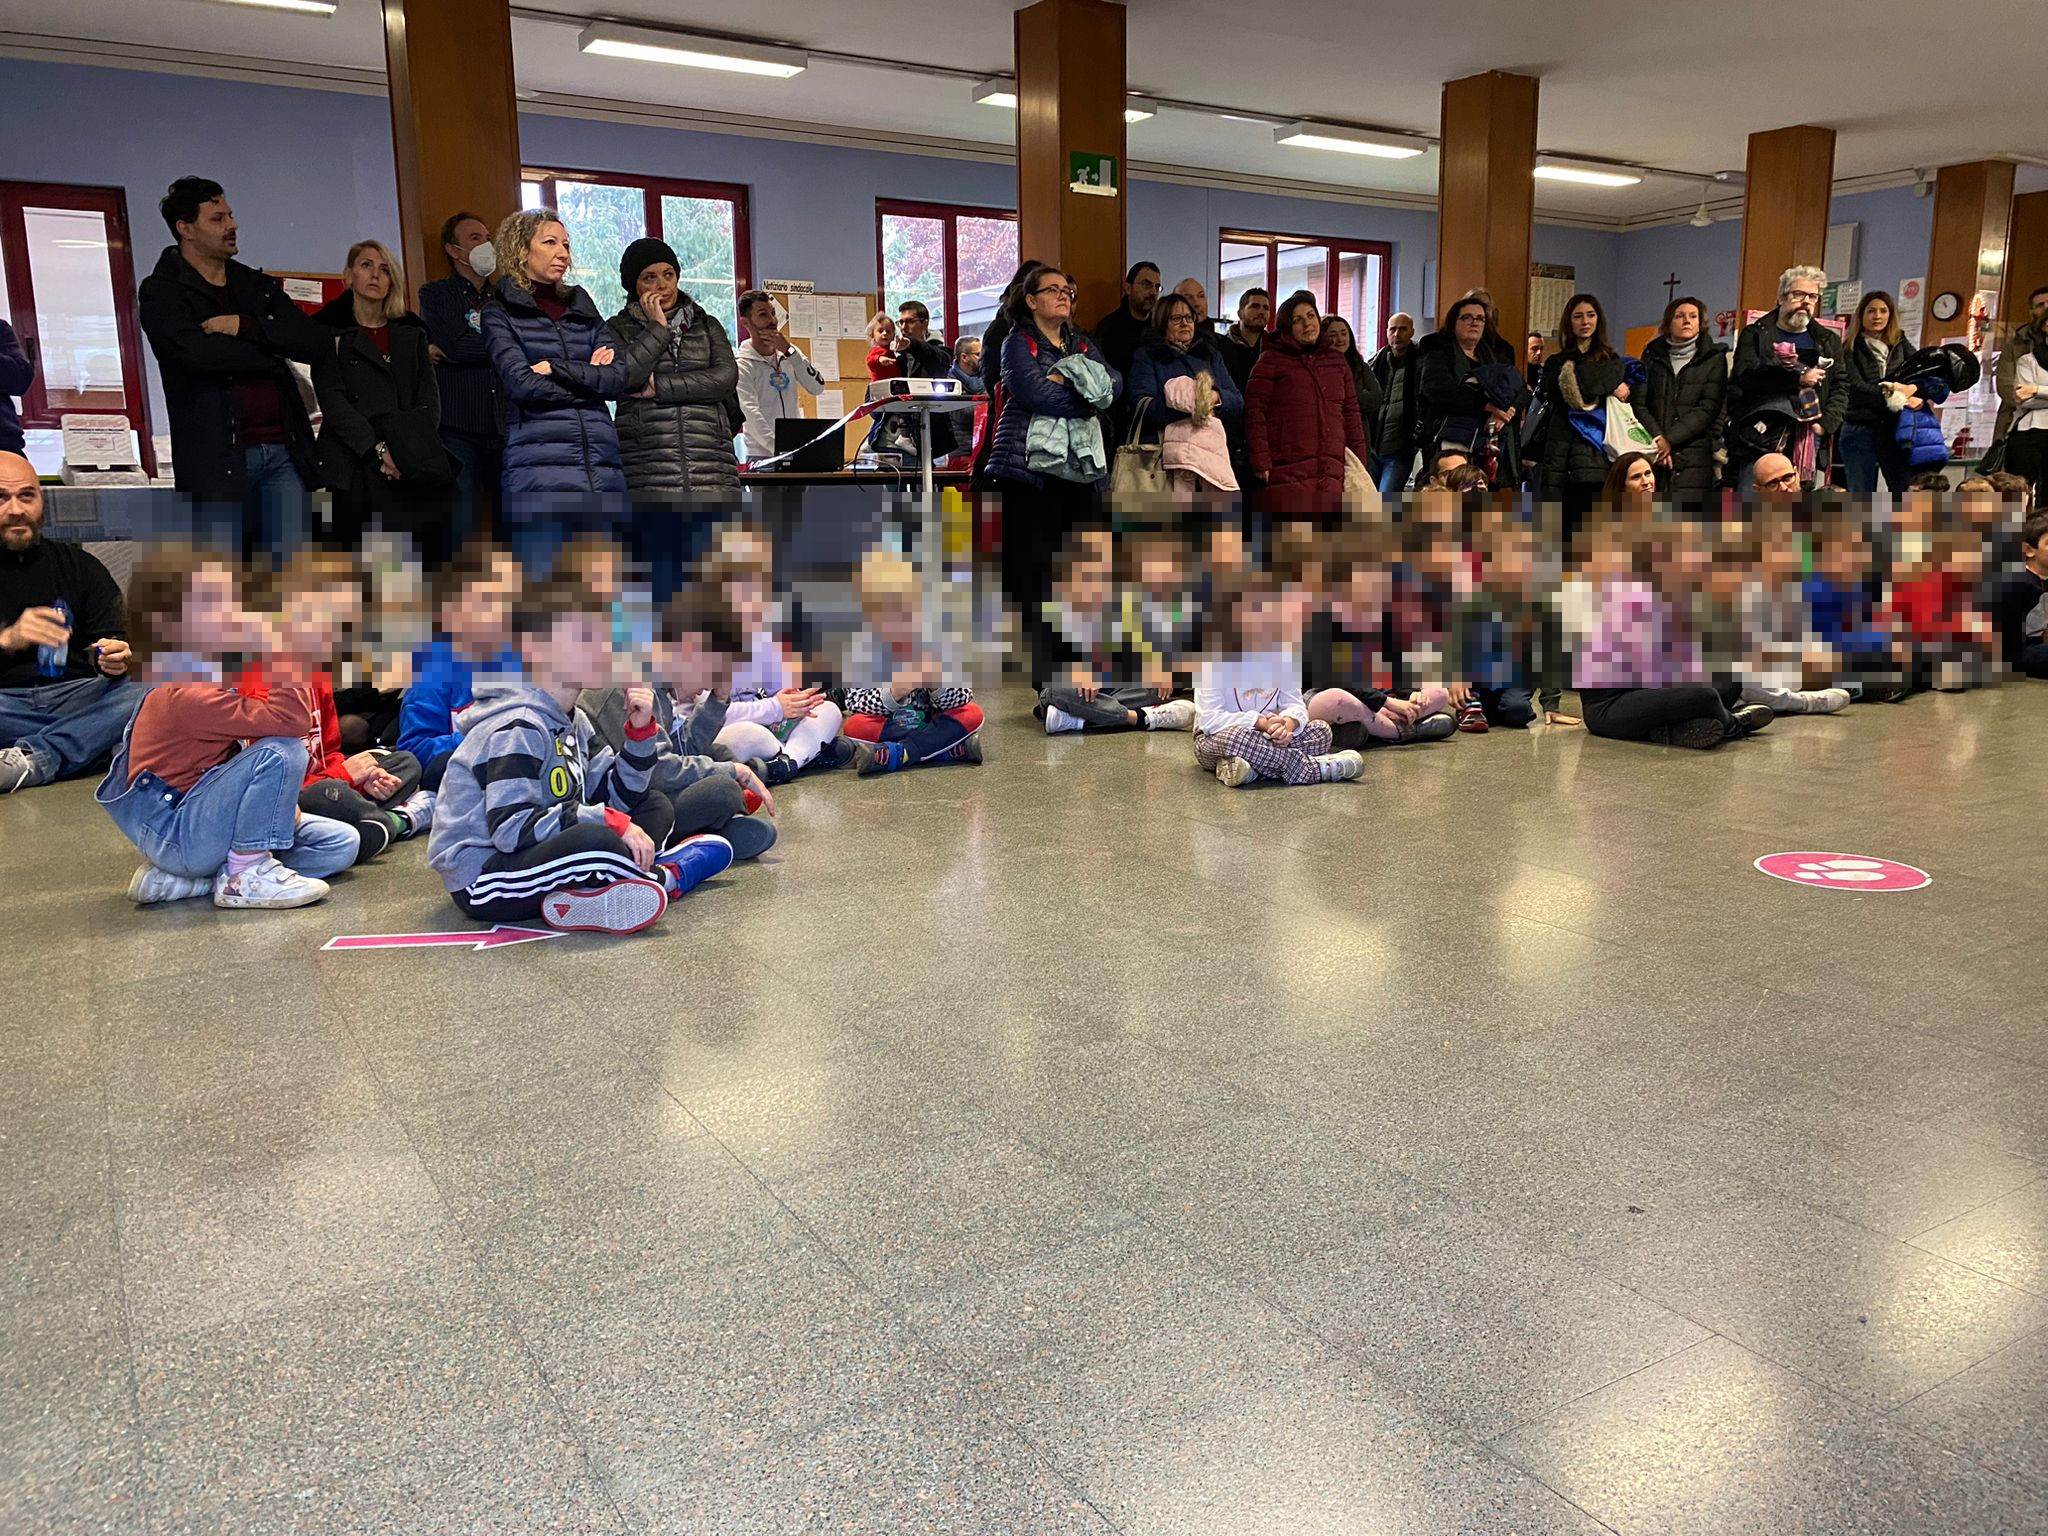 Bambini della Scuola dell'Infanzia accompagnati dai genitori sono accolti nell'atrio della Scuola Primaria Rosmini